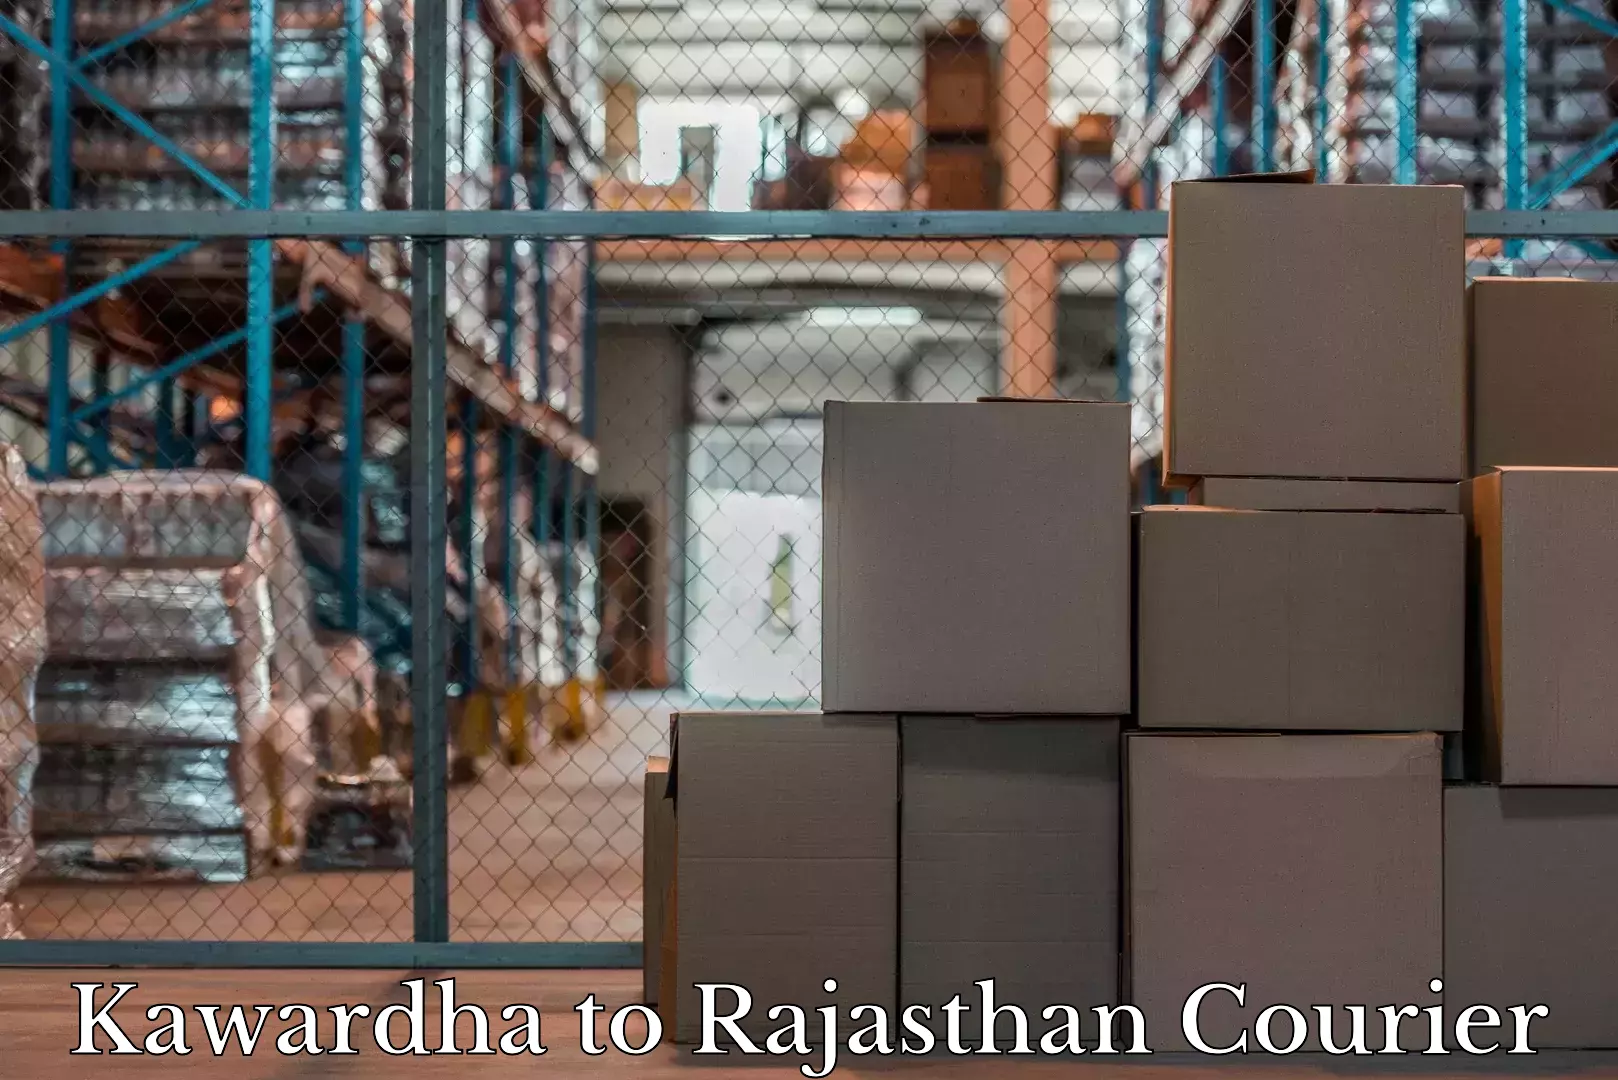 Baggage shipping experts Kawardha to Rajasthan